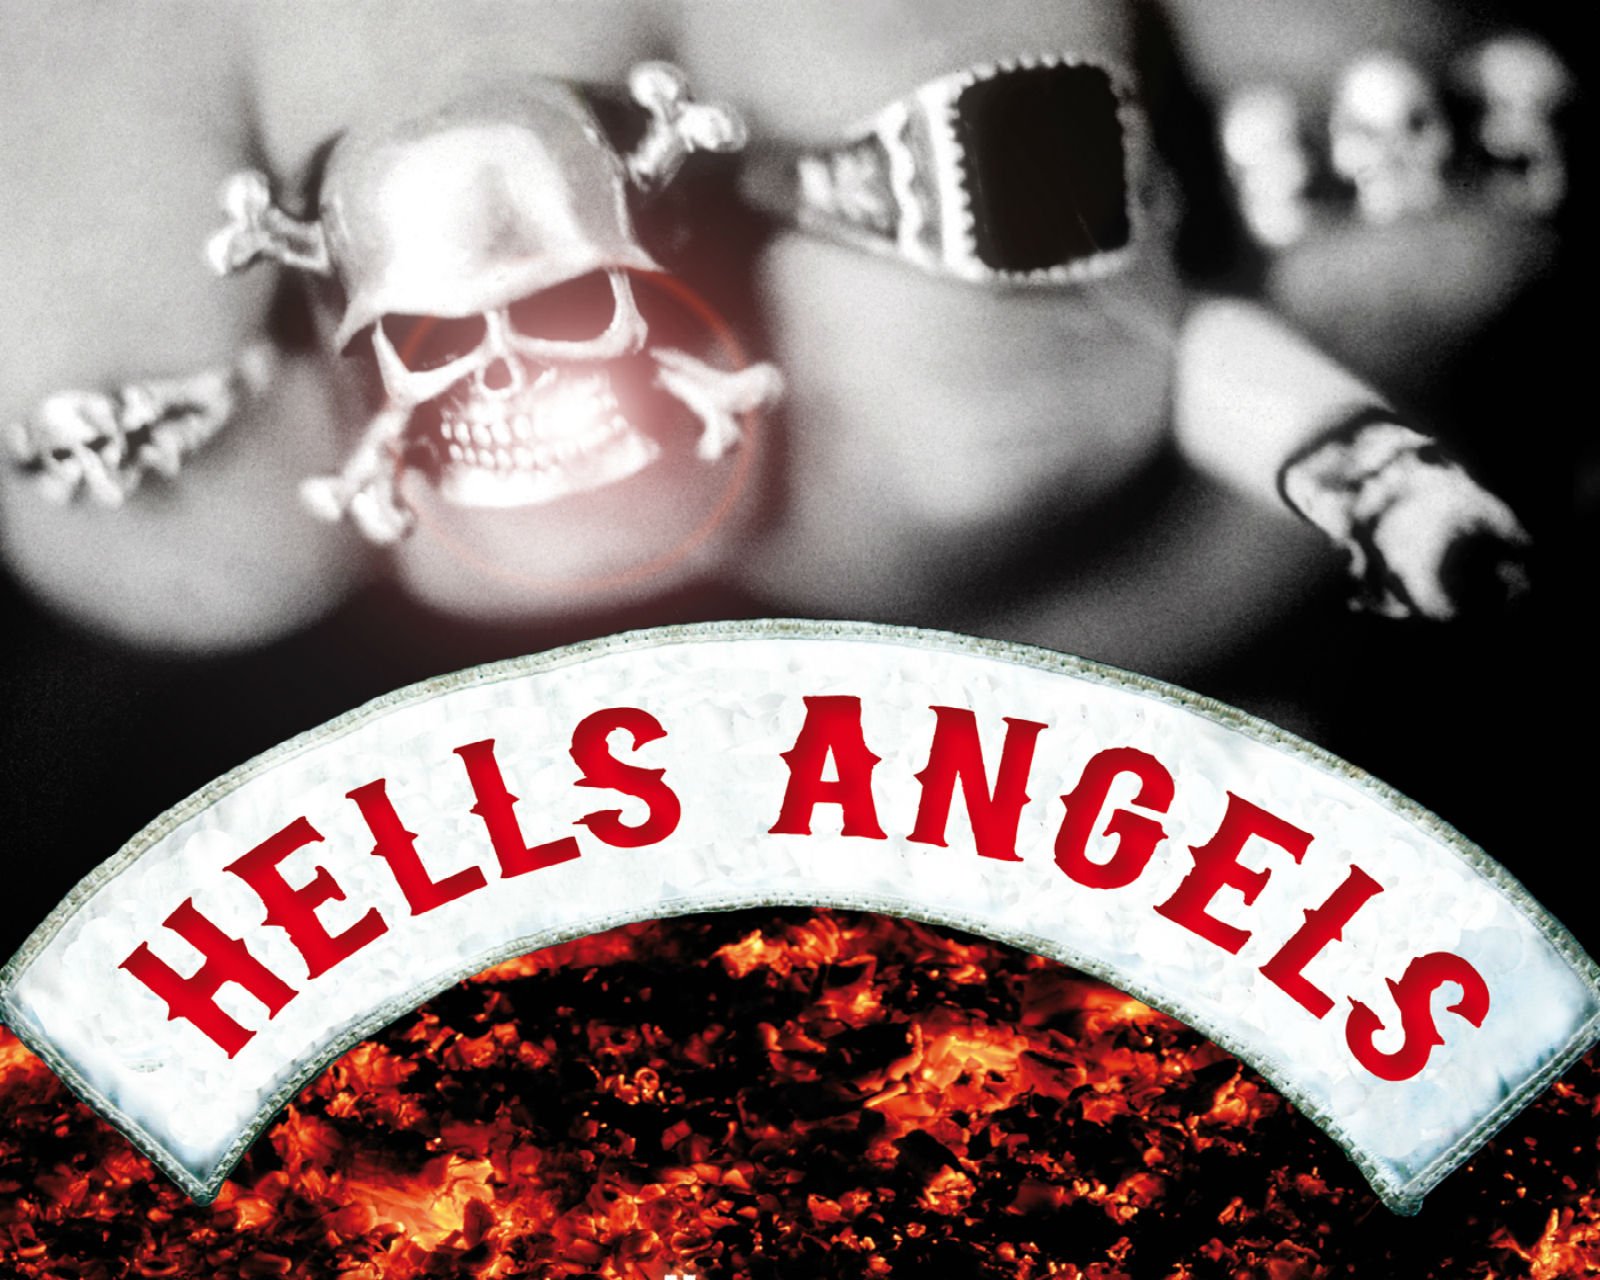 hells angels, Hamc, Biker, Hells, Angels, Motorbike, Motorcycle, Bike